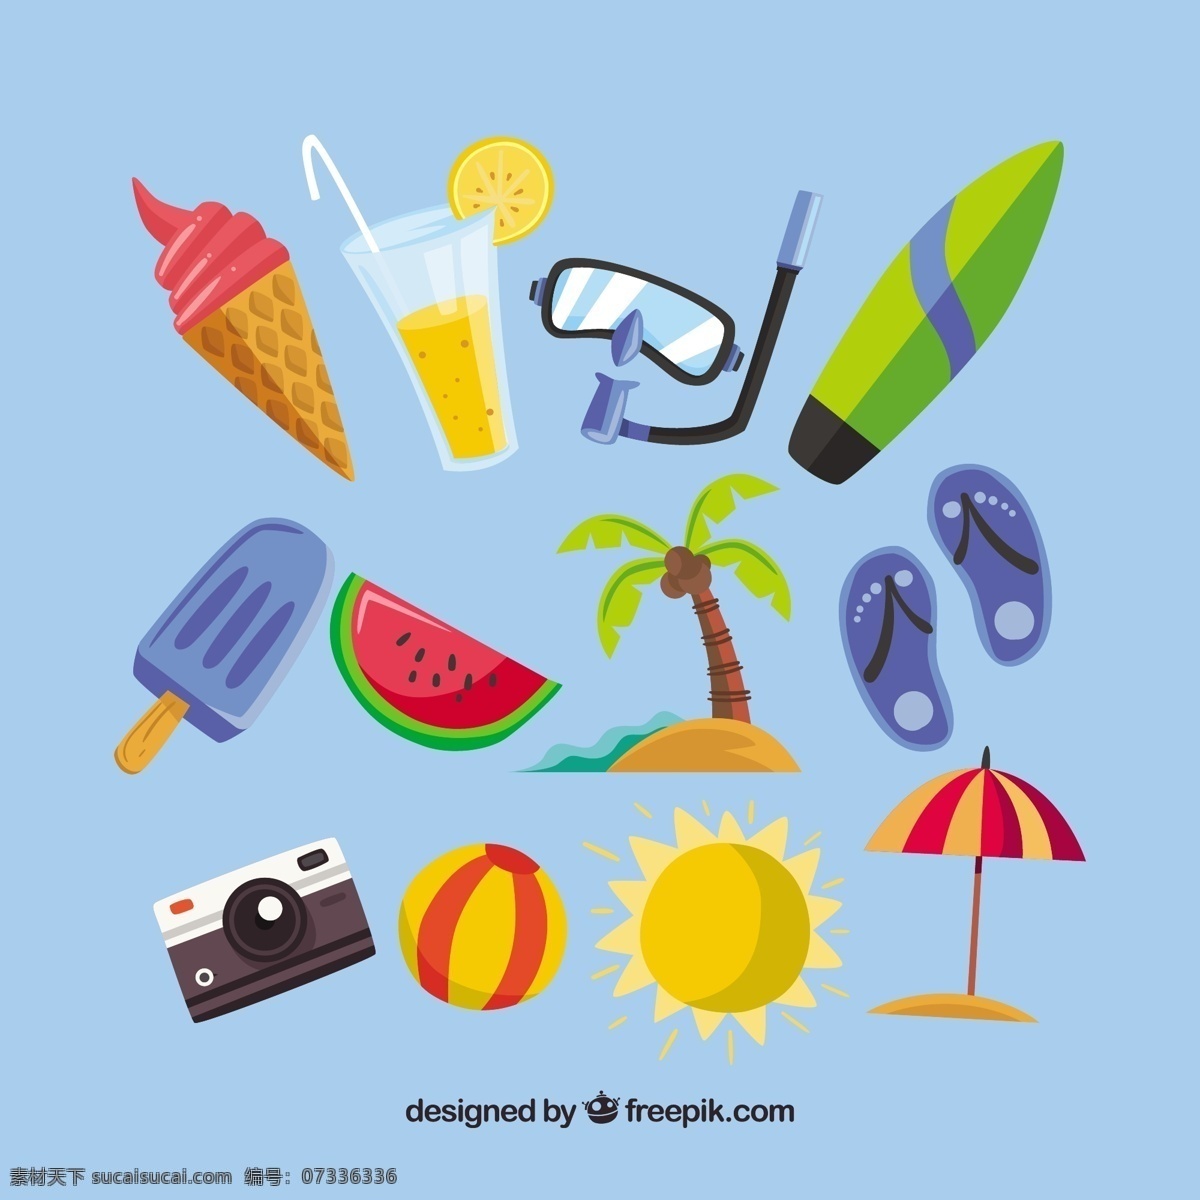 夏季 元素 彩色 集合 树 手 夏 相机 太阳 手绘 冰淇淋 色彩 节日 冰 饮料 棕榈树 球 棕榈 装饰 度假 西瓜 奶油